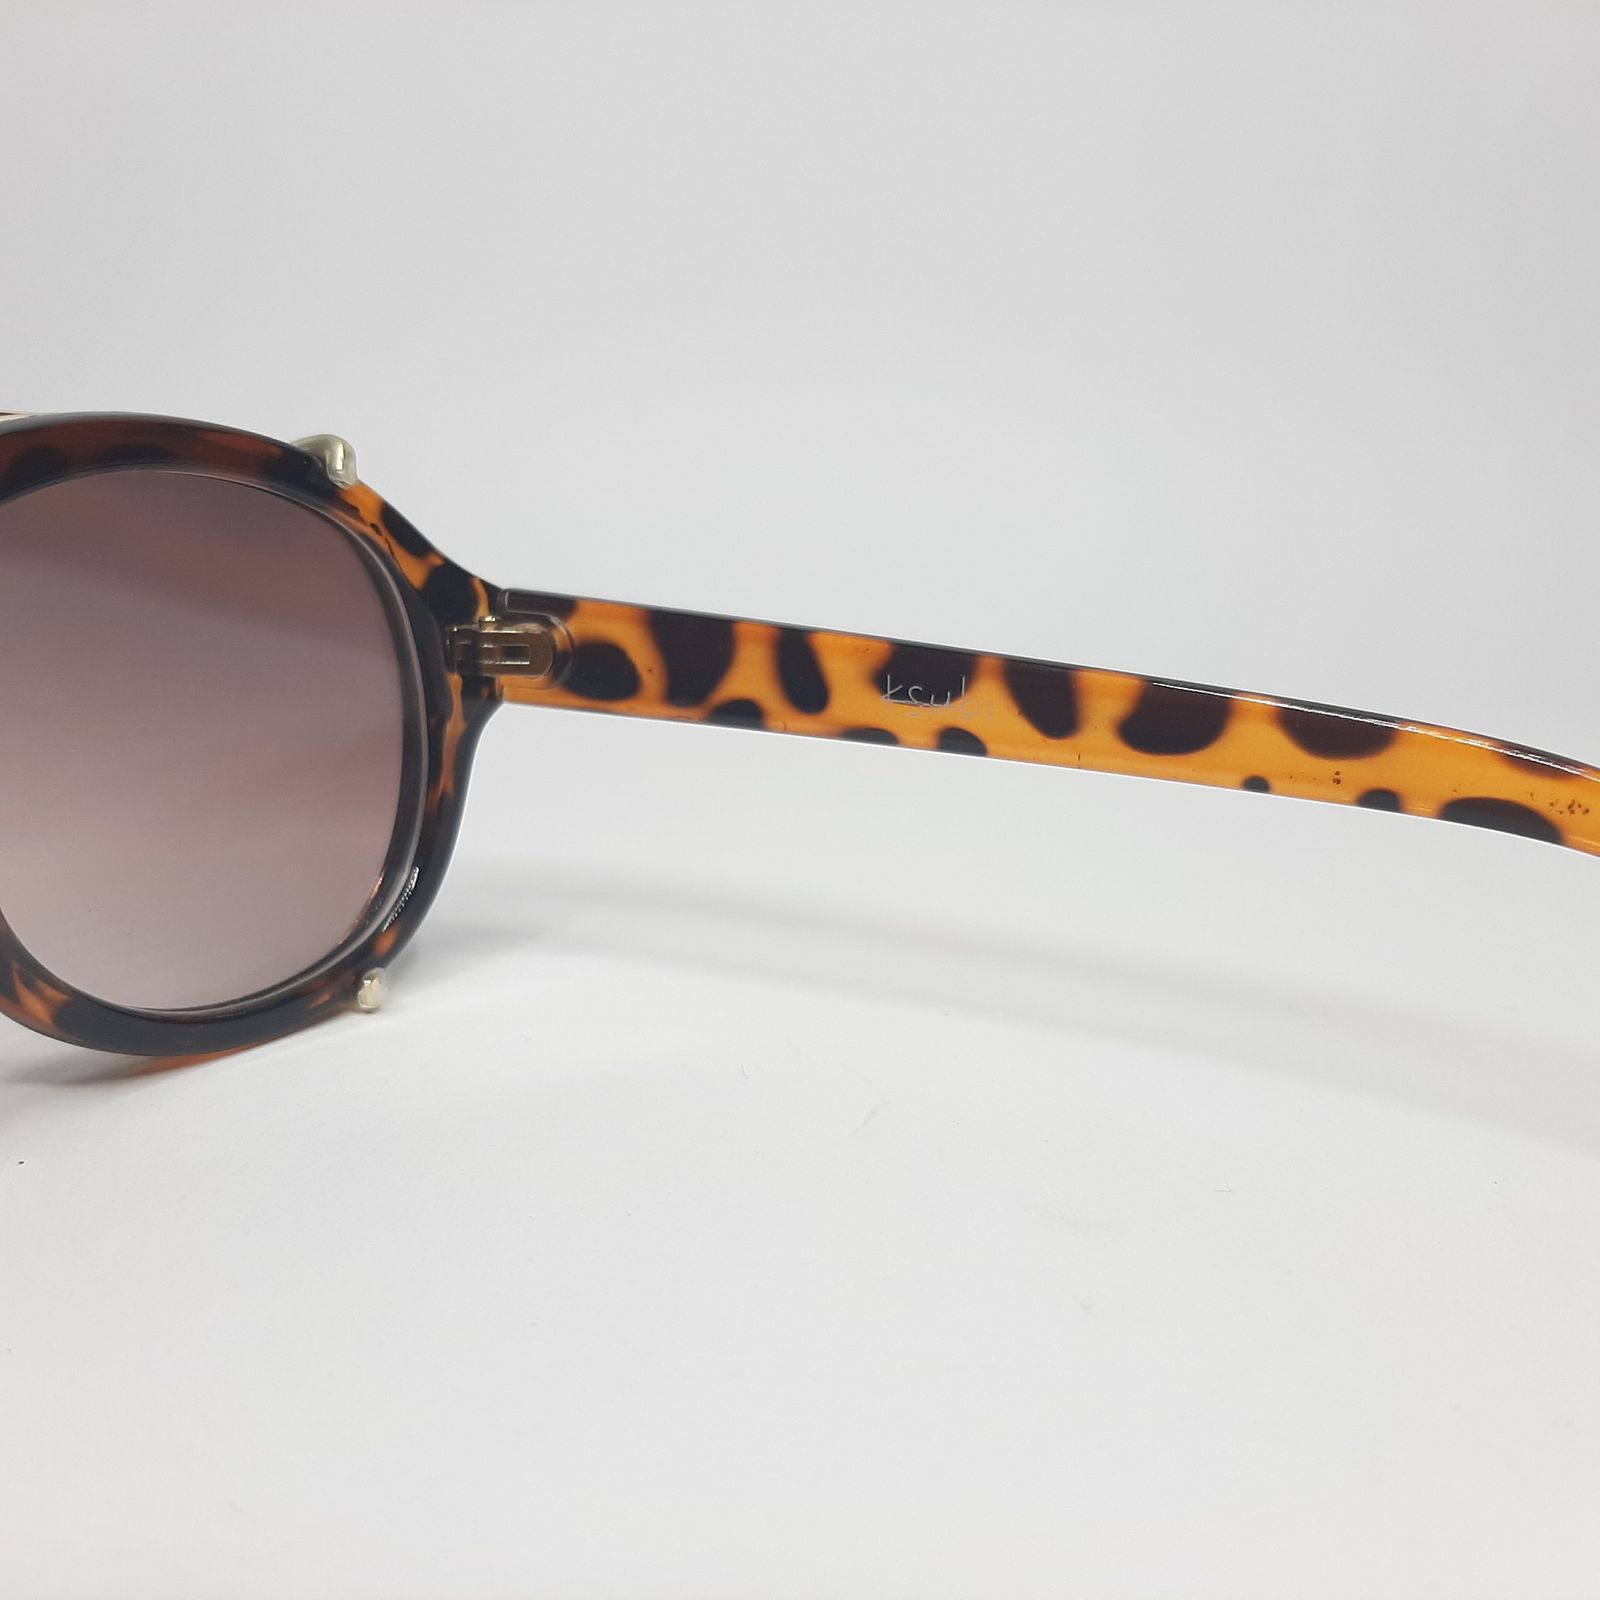 عینک آفتابی زنانه کی سوبی مدل K001c3 -  - 6